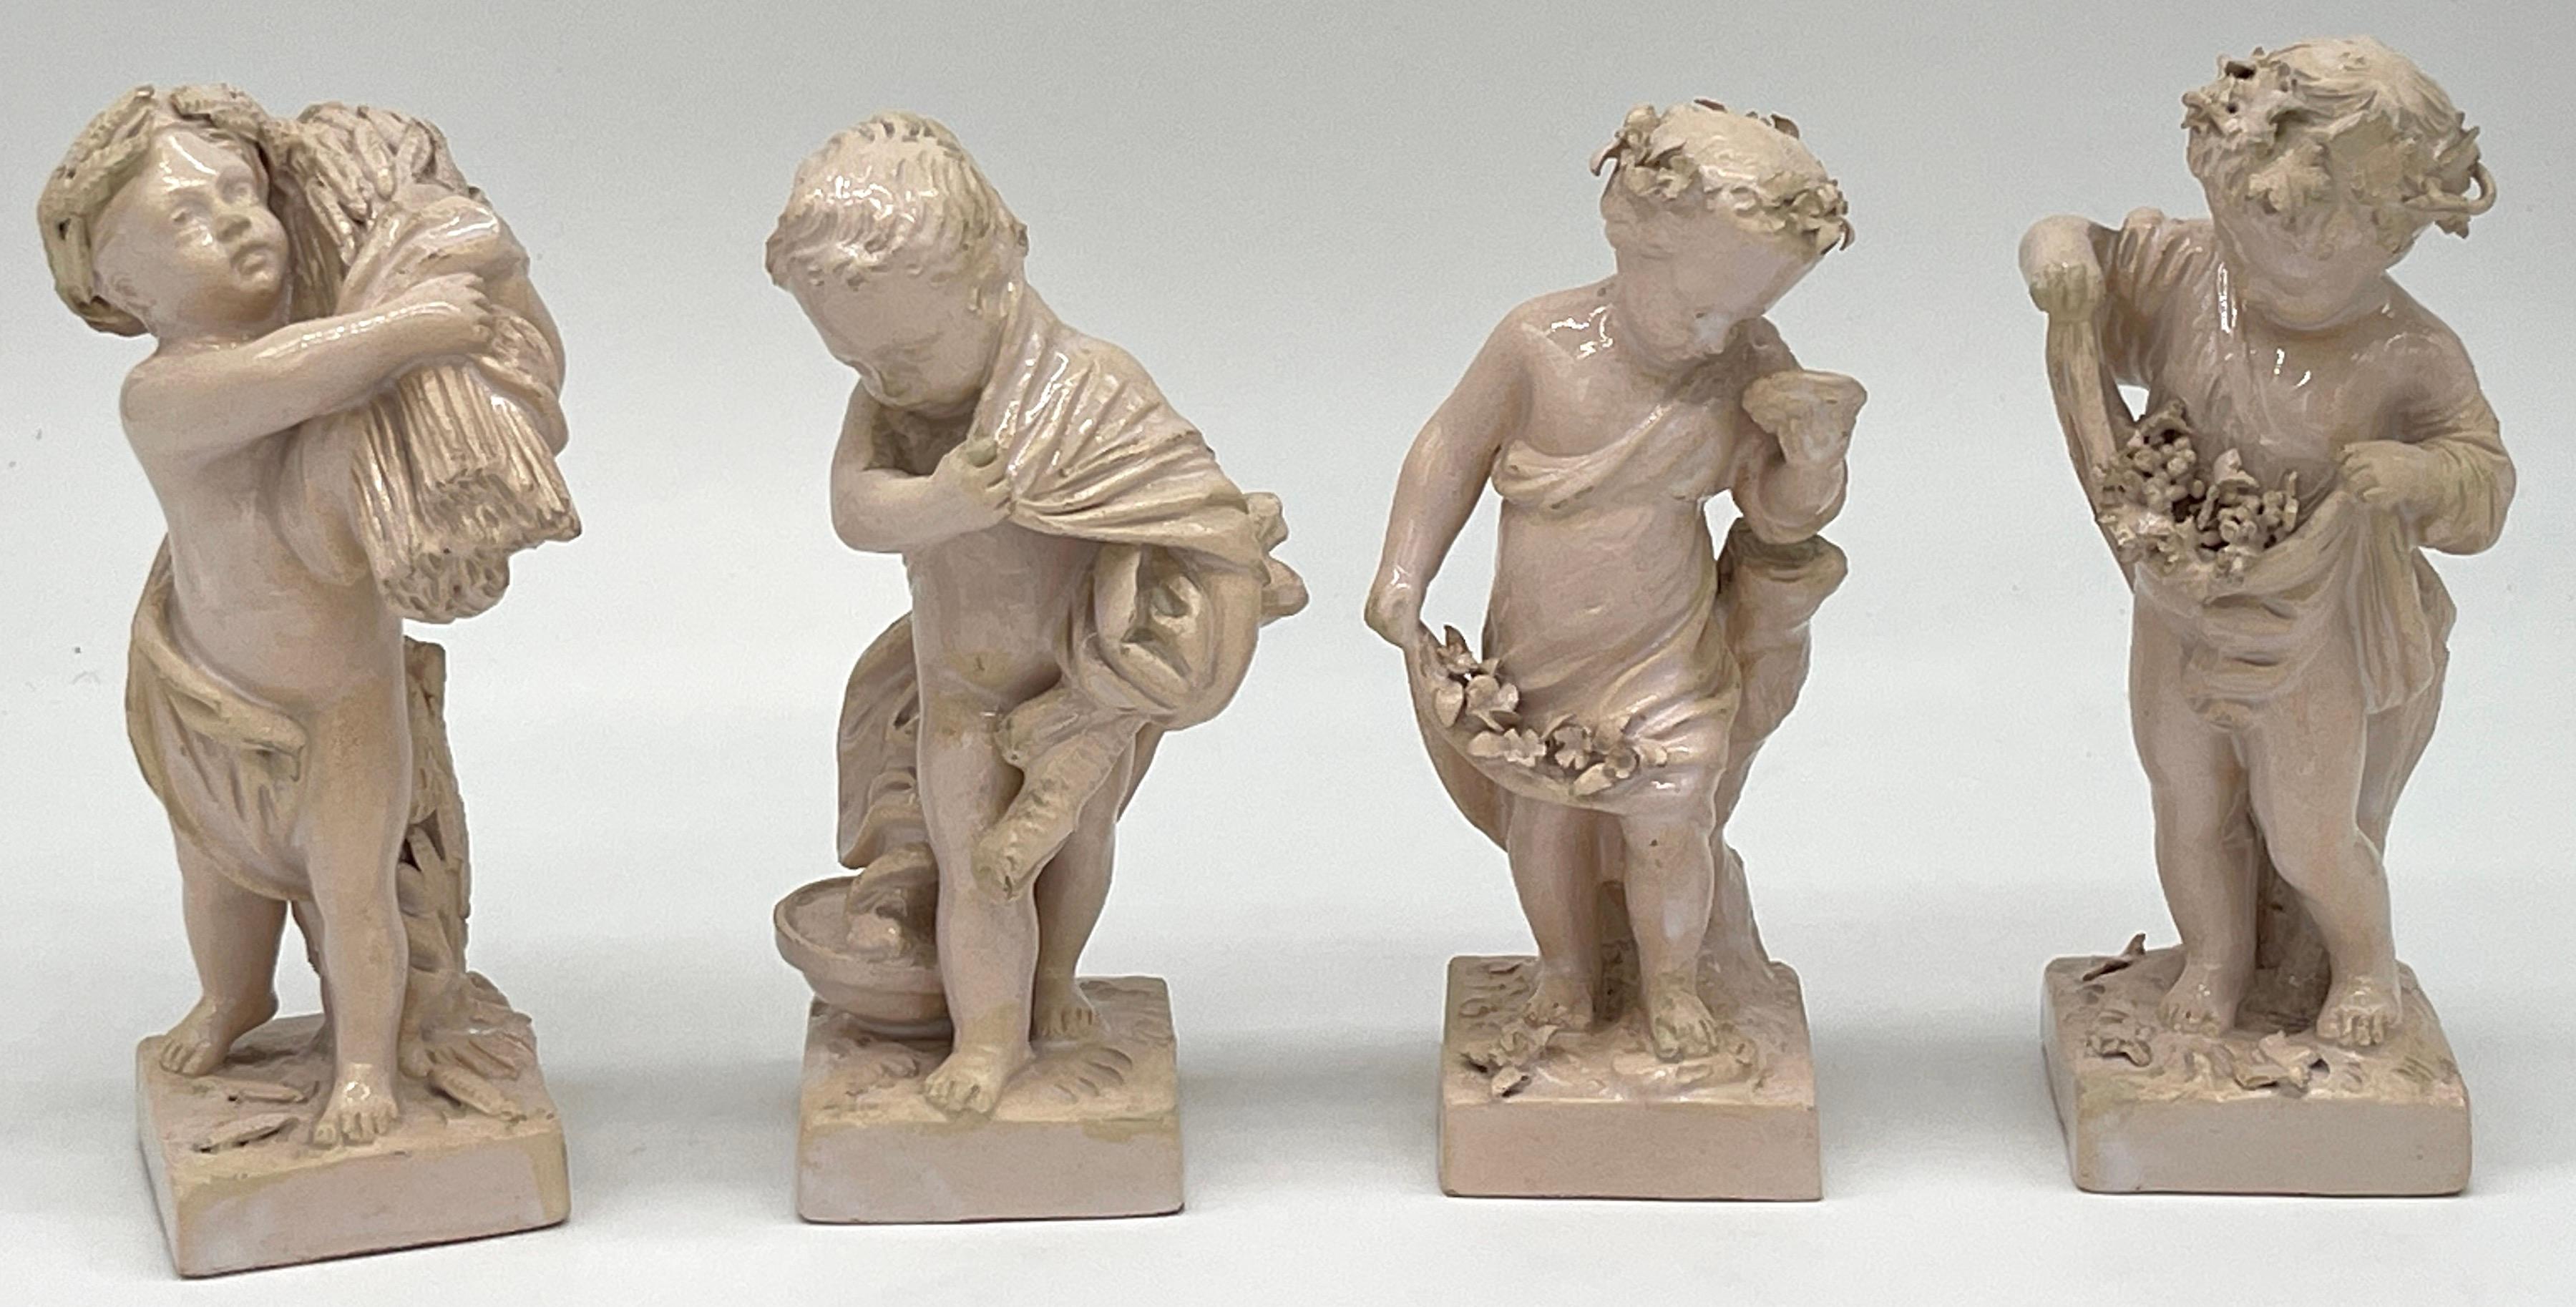 Sèvres Cremewarenfiguren, die die vier Jahreszeiten darstellen, nach/von Bachelier 
Frankreich, 19. Jahrhundert 
Drei sind mit dem eingeflochtenen L gekennzeichnet, eines ist mit 260 nummeriert, und zwei haben unleserliche